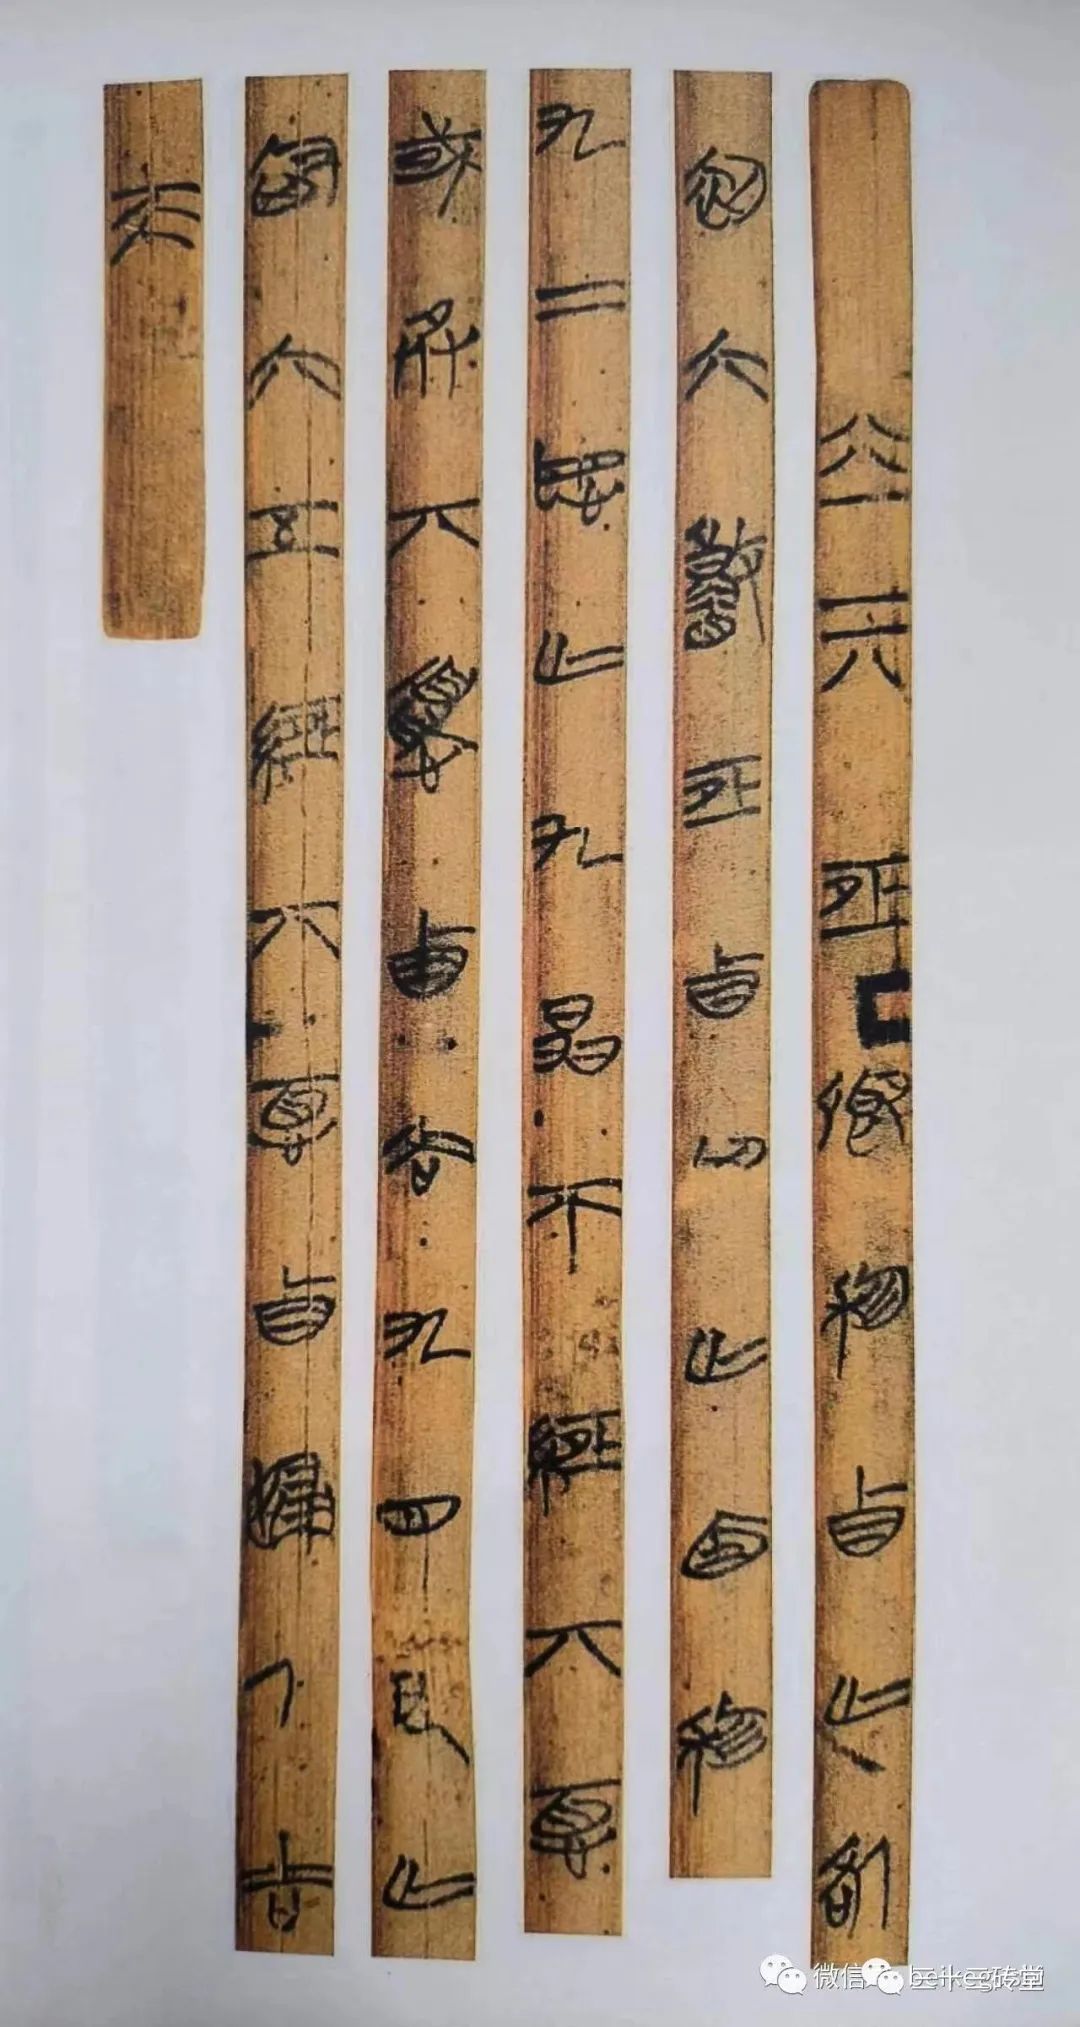 孔子整理而传授的六部先秦古籍中，《易经》被作为“六经之首”